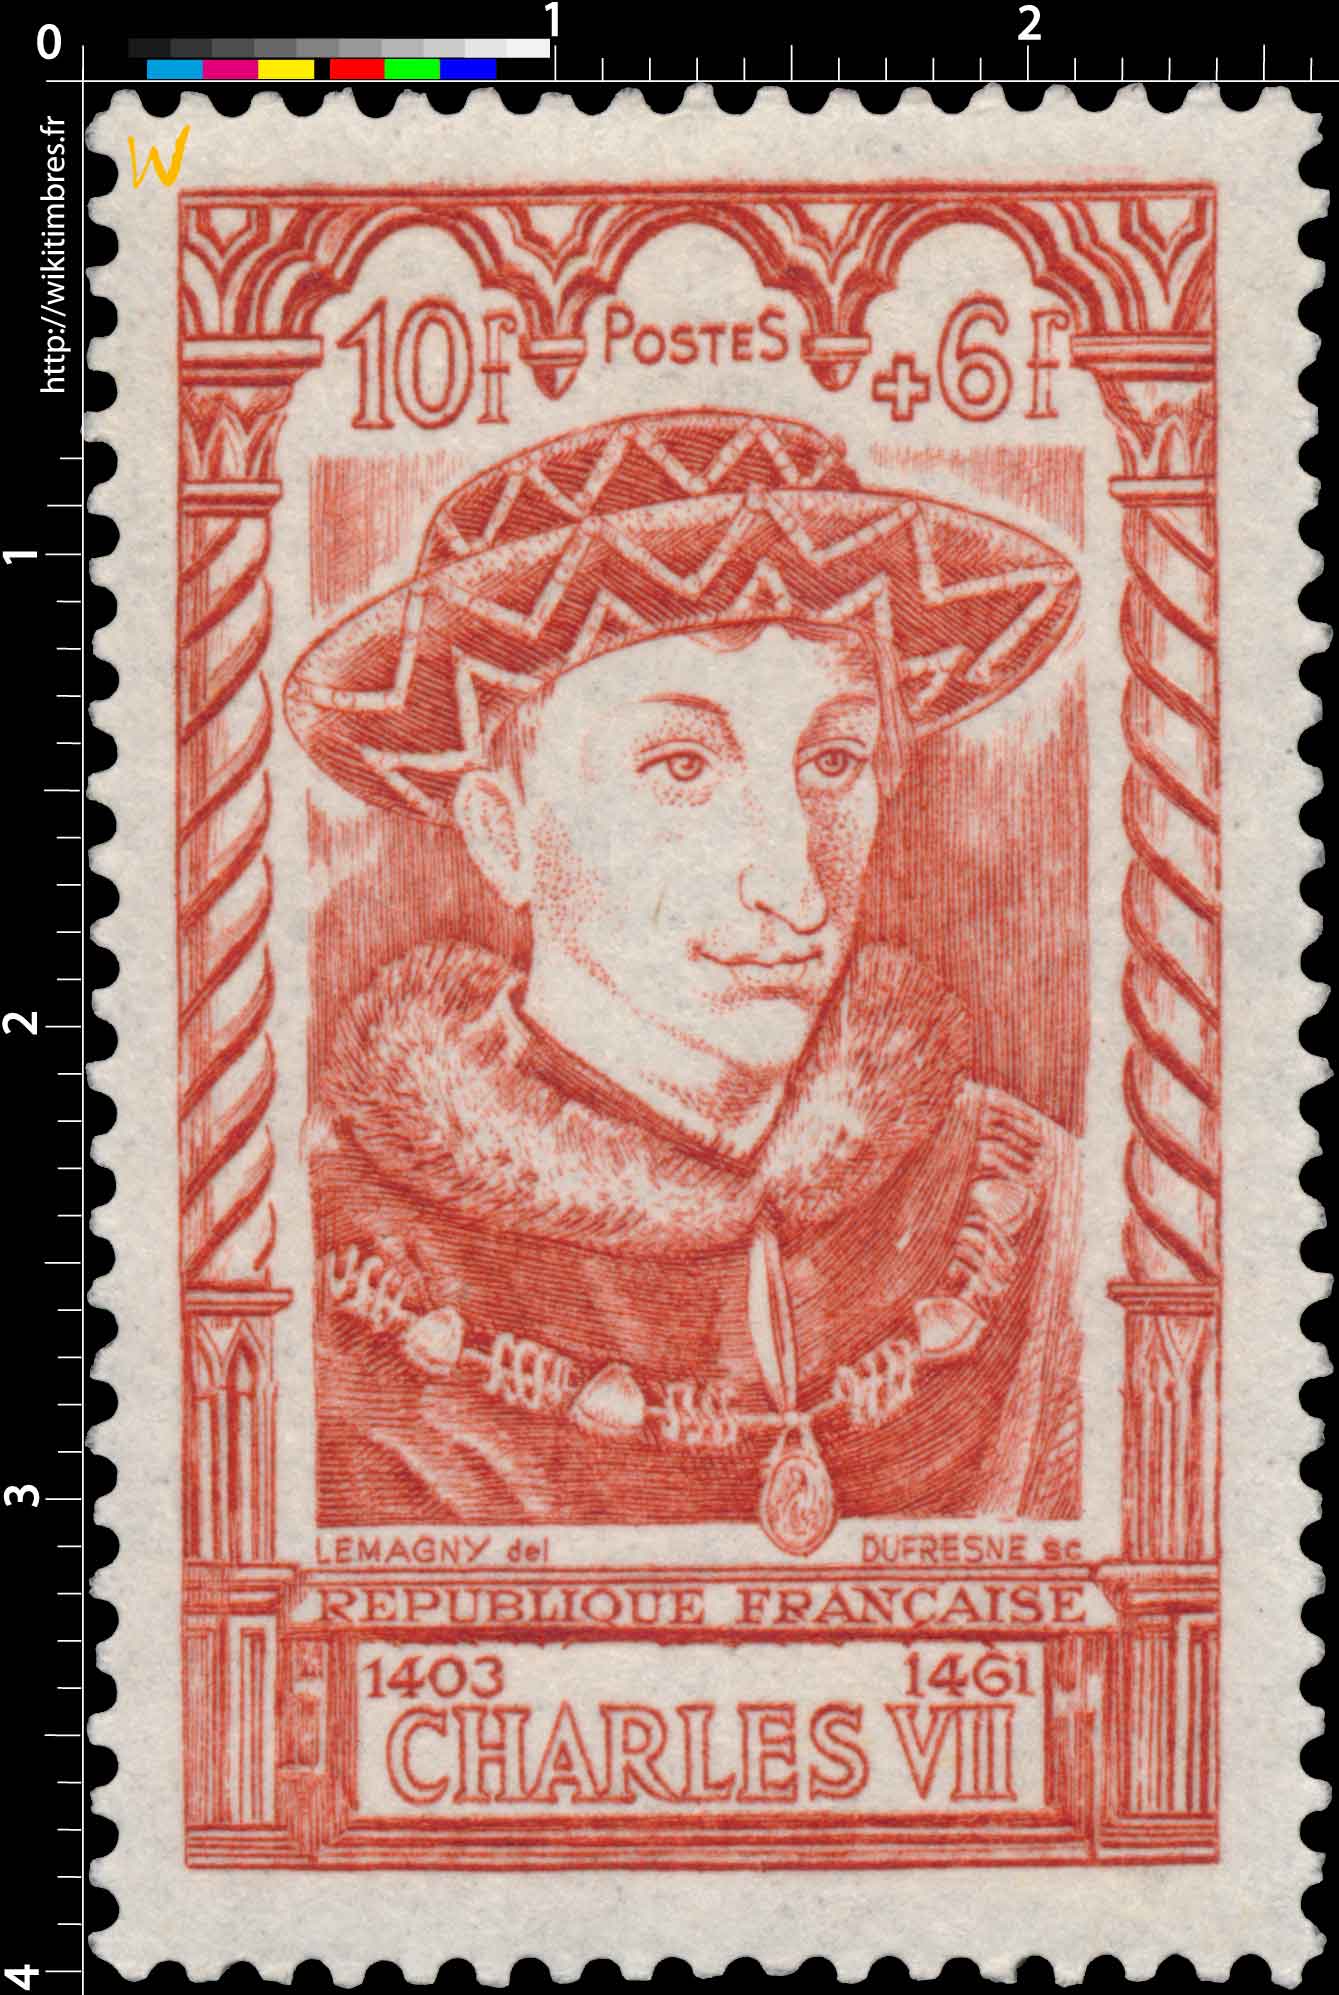 CHARLES VII 1403-1461